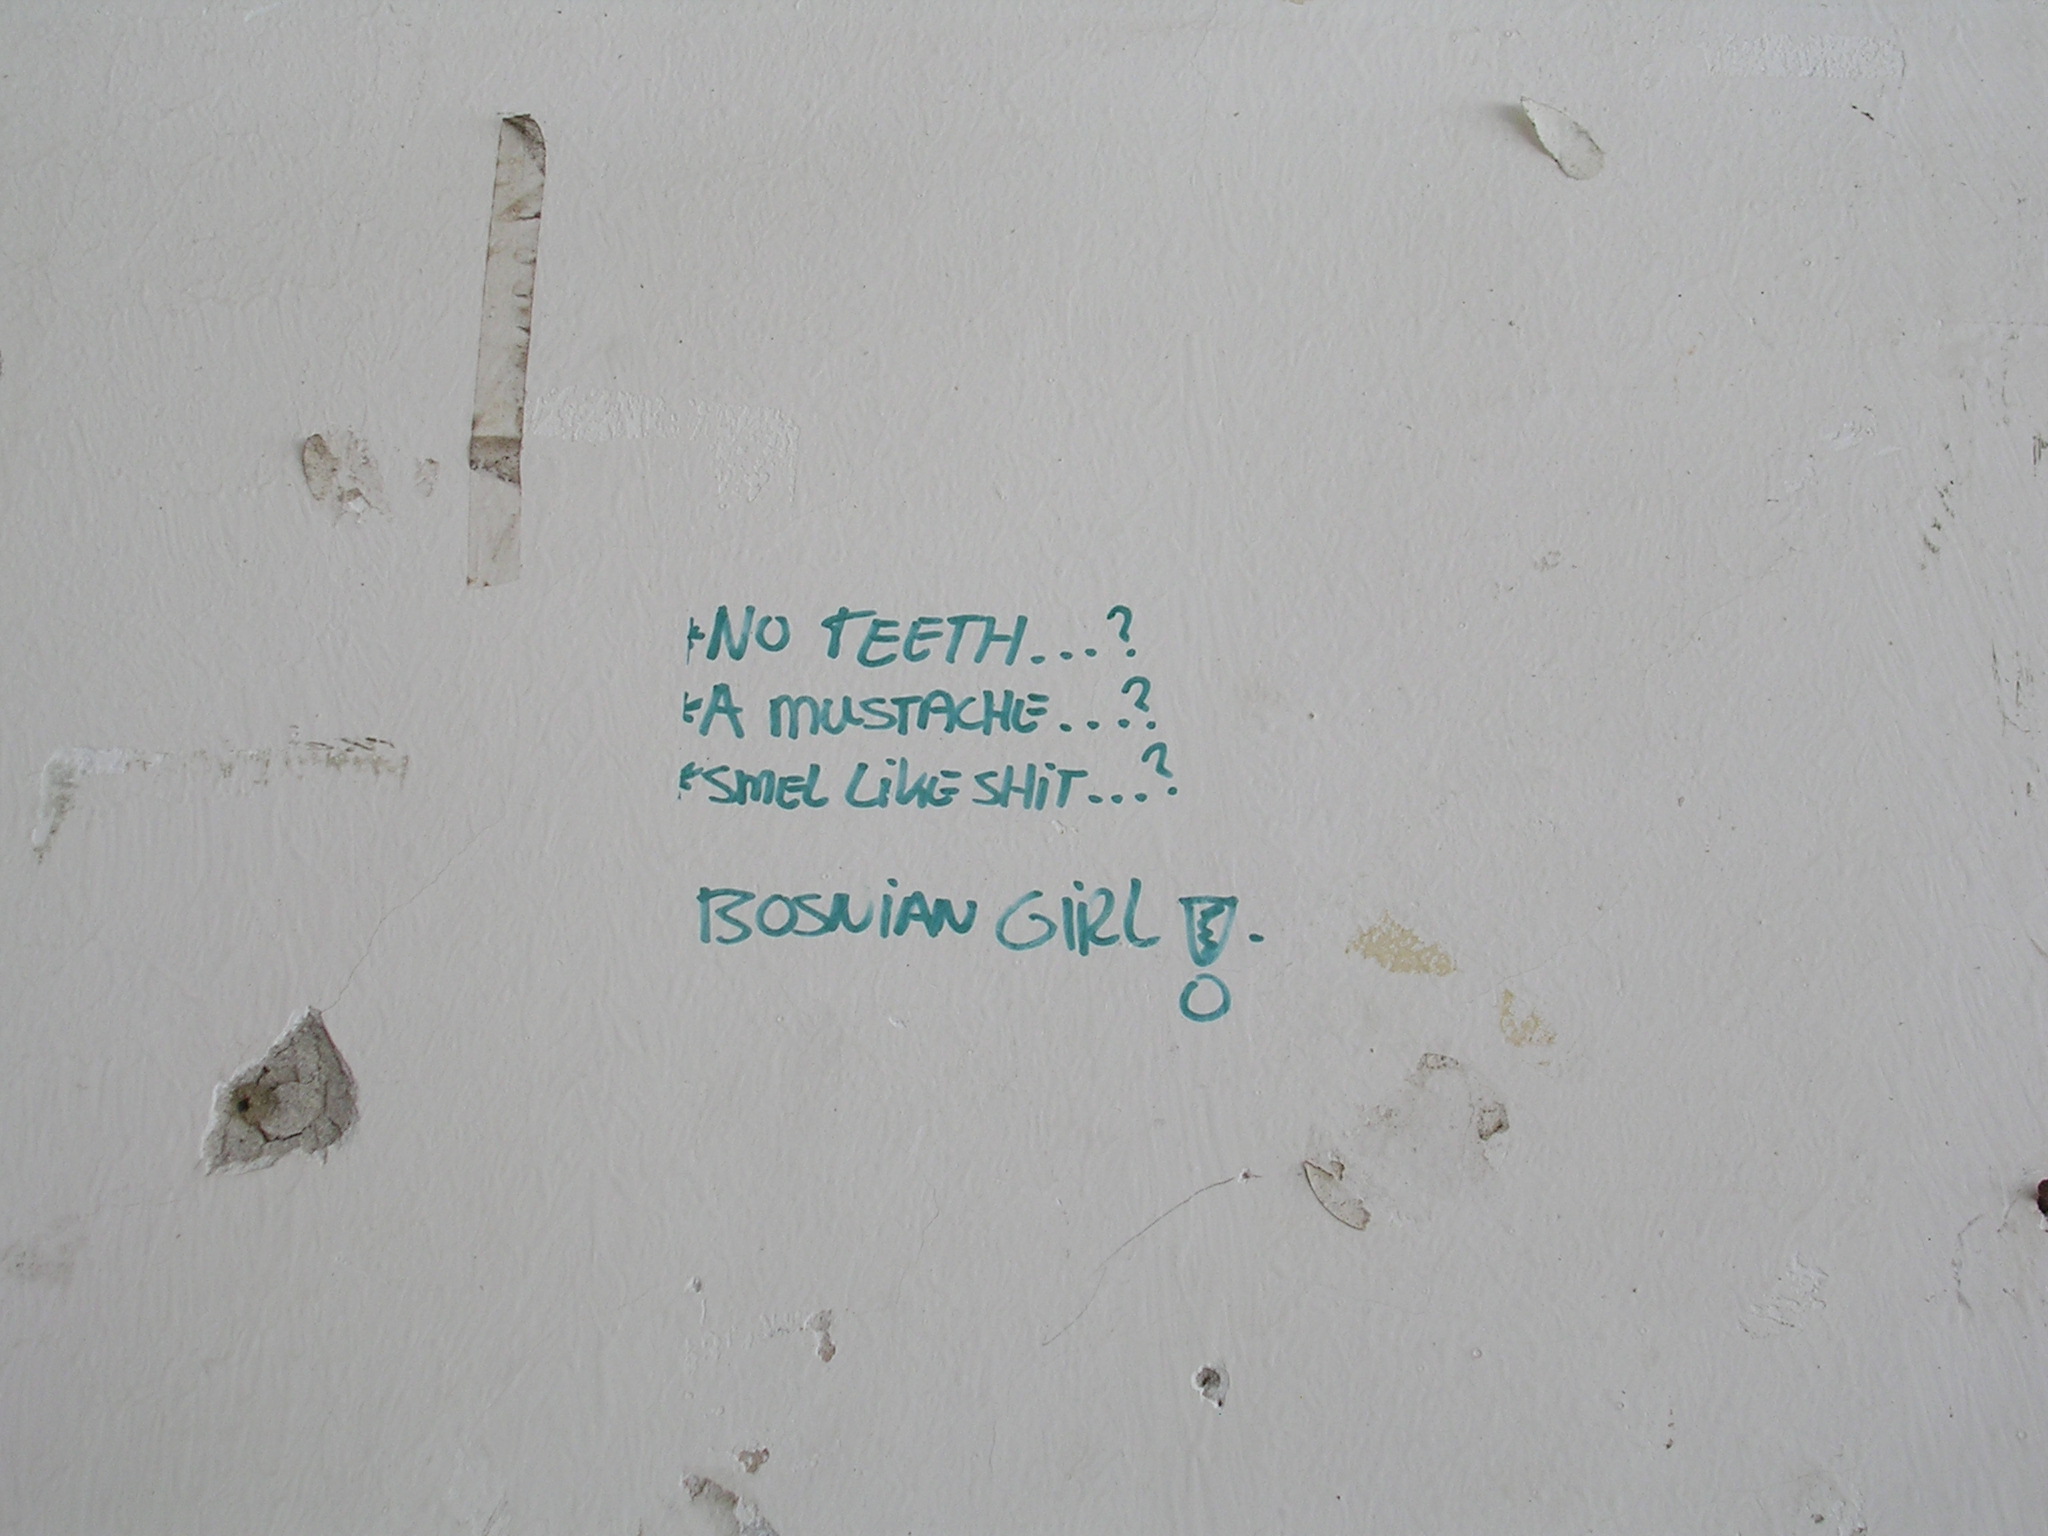 یادداشت نوشته شده که در دیوارهای داخلی کارخانه باتری سازی در Potocari ، جایی که Hollandbat مستقر بود ، وجود دارد.  این نوشته سپس توسط هنرمند شیلا کامریک در یکی از عکسهای معروف سیاه و سفید خود مورد استفاده قرار گرفت ، جایی که او با آنچه در فشار بیش از حد نوشته شده است ، به طول نیمه ظاهر می شود (عکس از L. Zanoni)